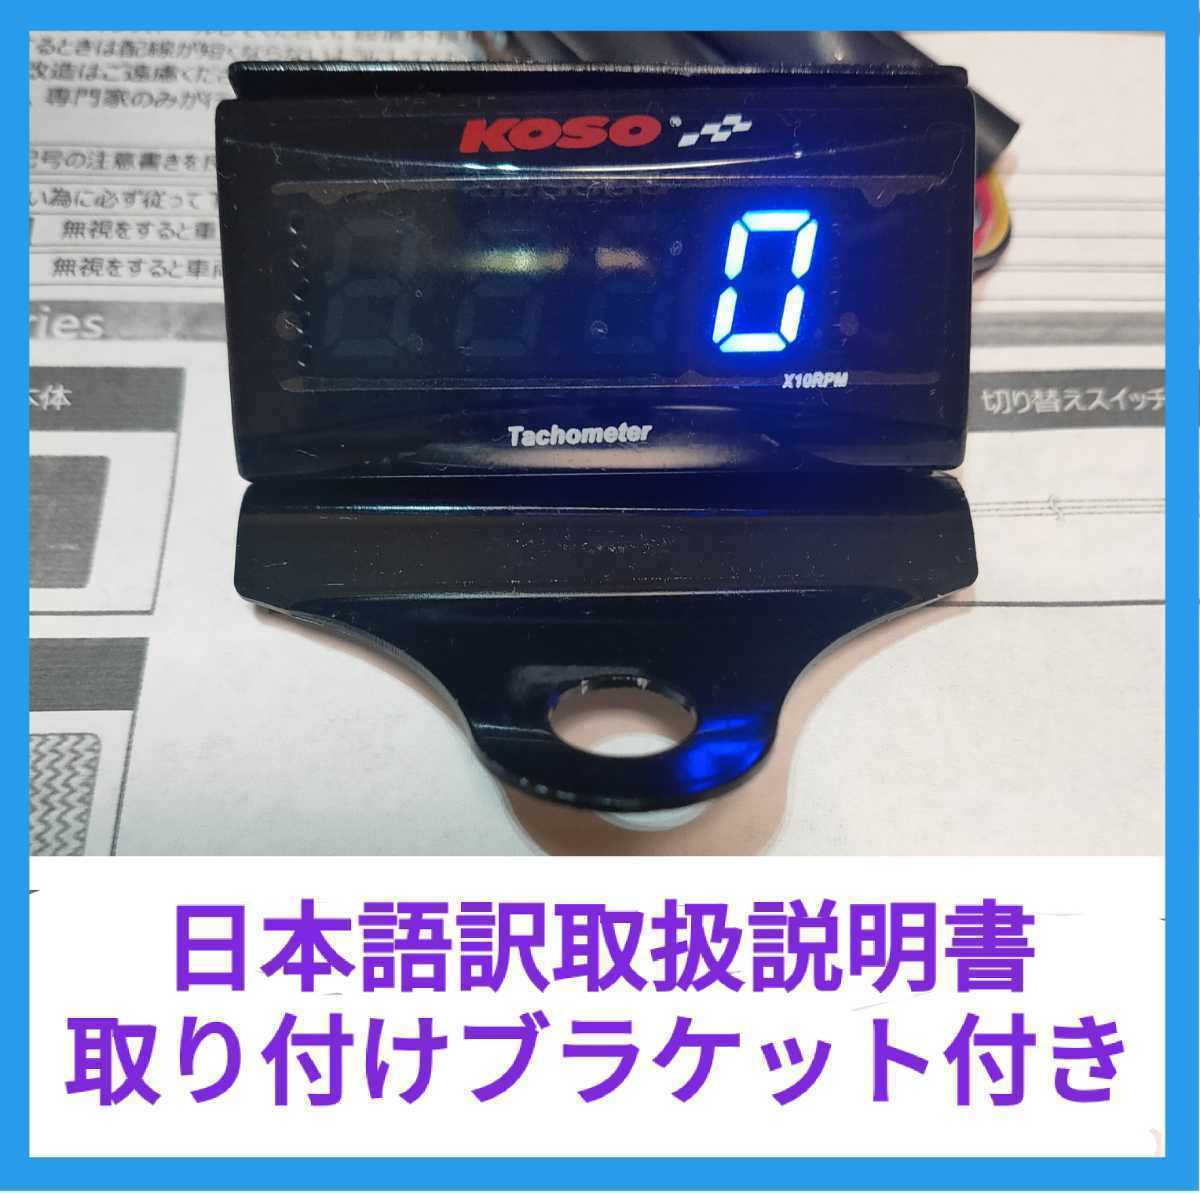 KOSO スリムデジタルタコメーター ブラケット付き。簡単な動作確認済み(電源、ボタン、表示)。汎用タコメーター デジタル表示 表示色 青 _画像1